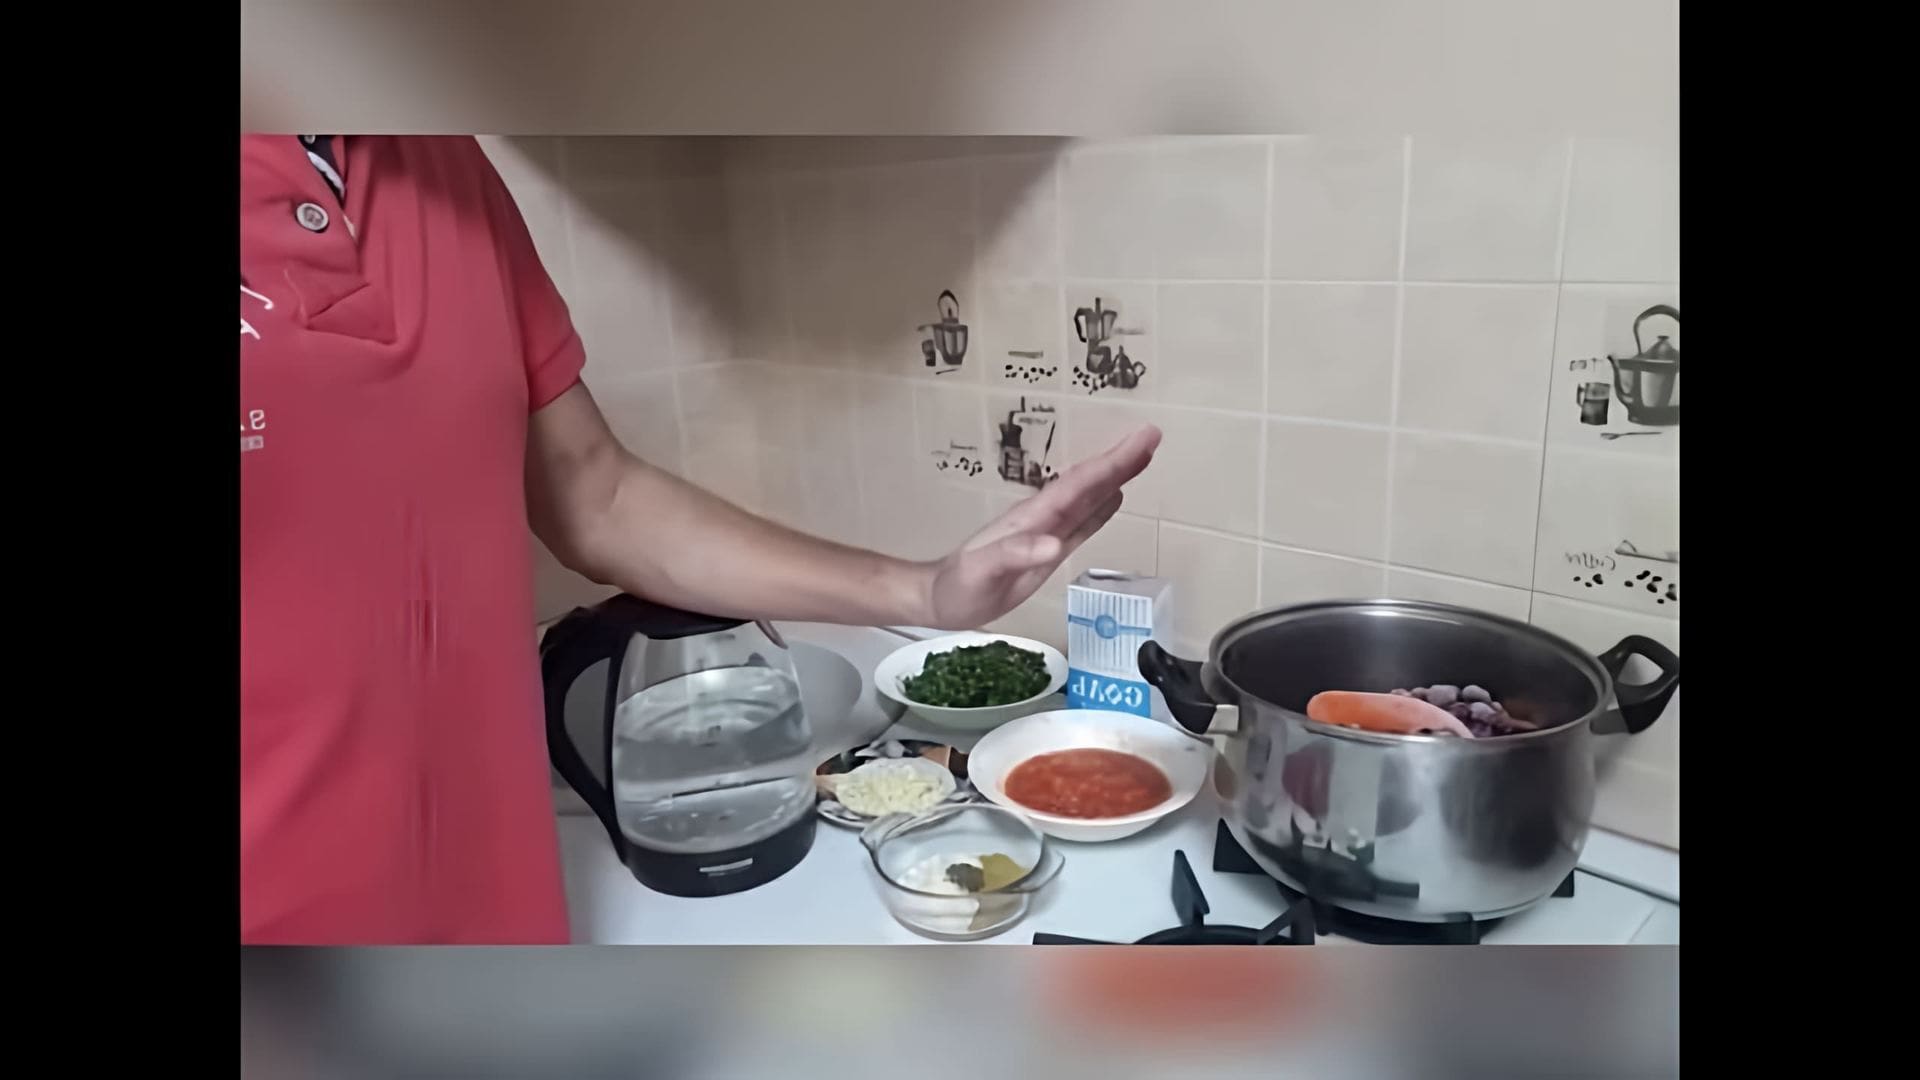 В этом видео демонстрируется процесс приготовления соуса "ткемали" из сливы и других ингредиентов